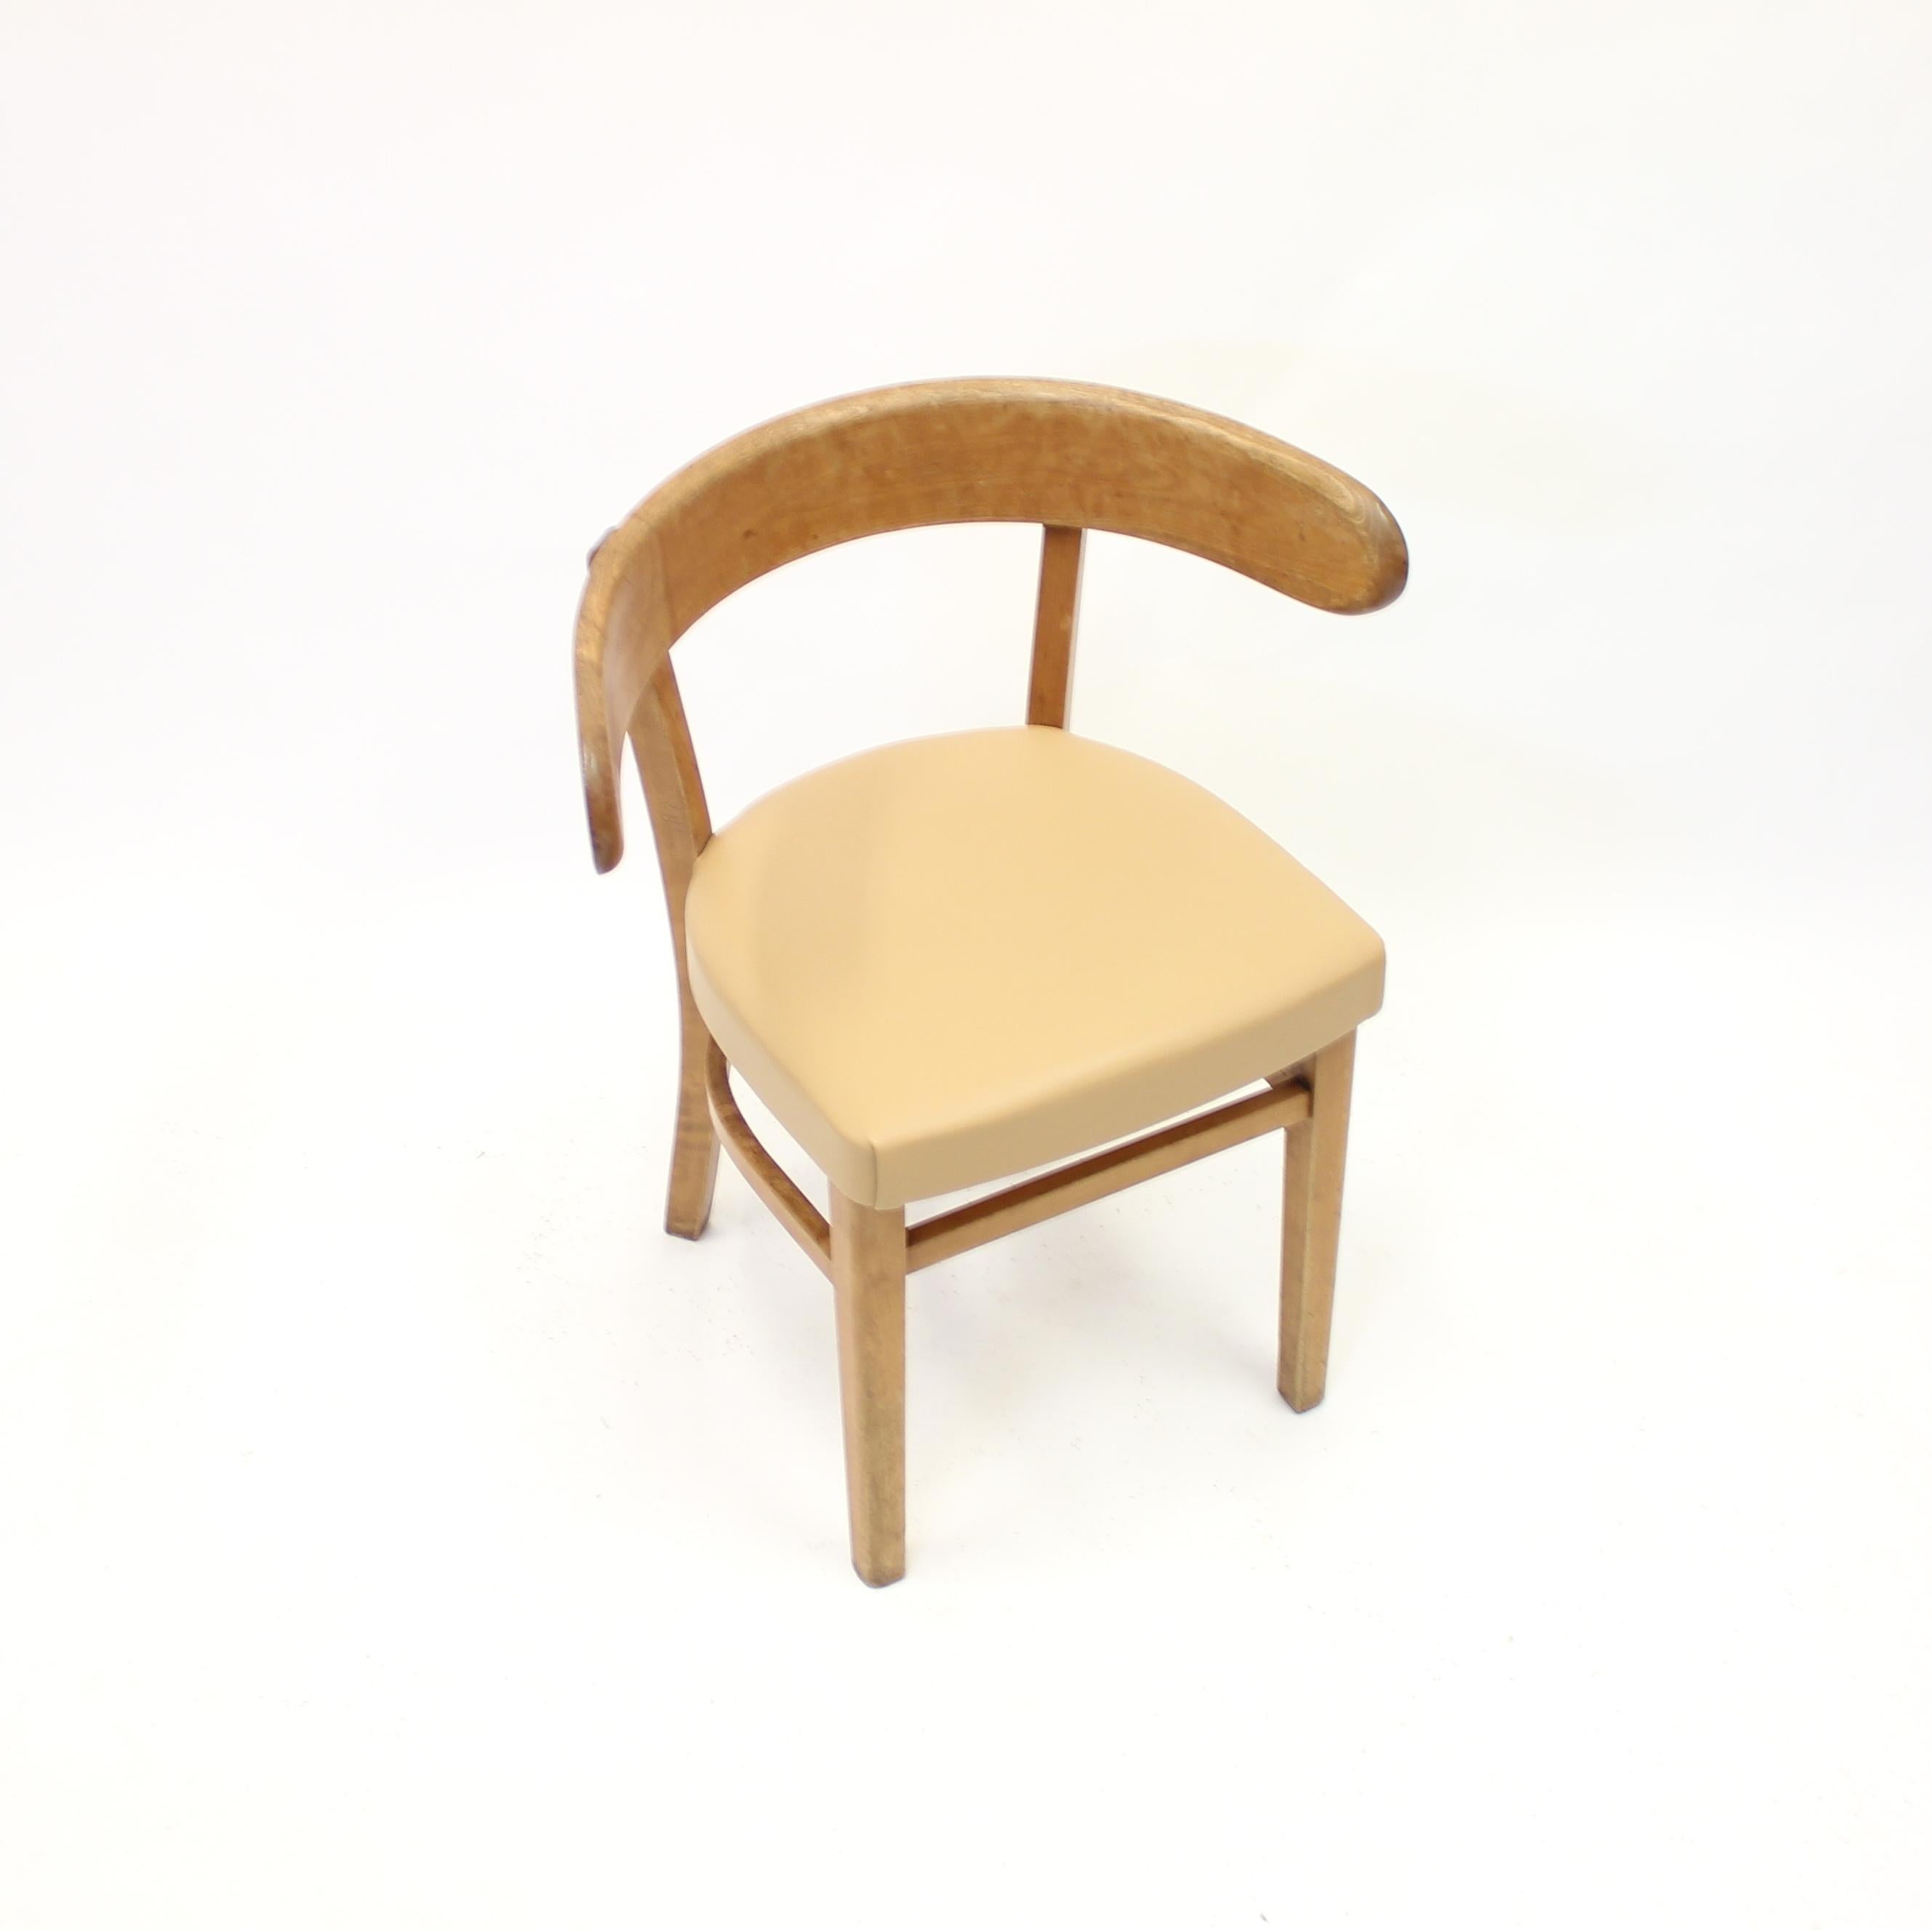 Finnish Werner West, Hugging Chair, Wilhelm Schauman Ltd, 1940s